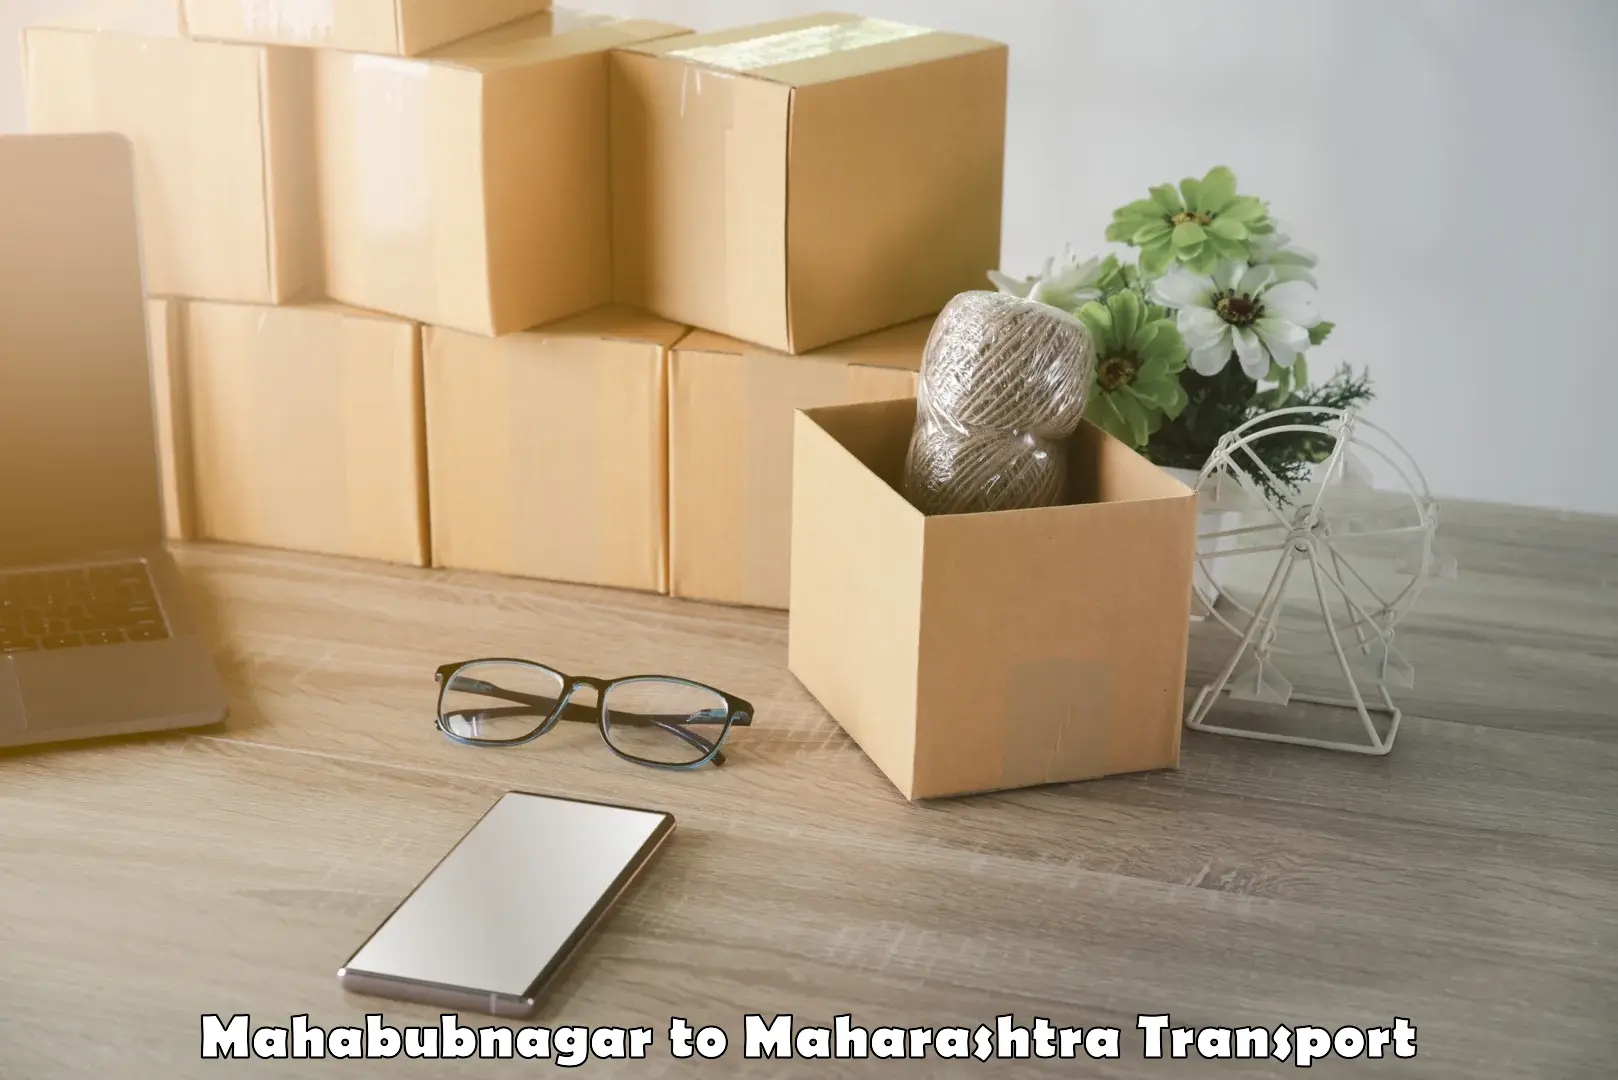 Online transport service Mahabubnagar to Worli